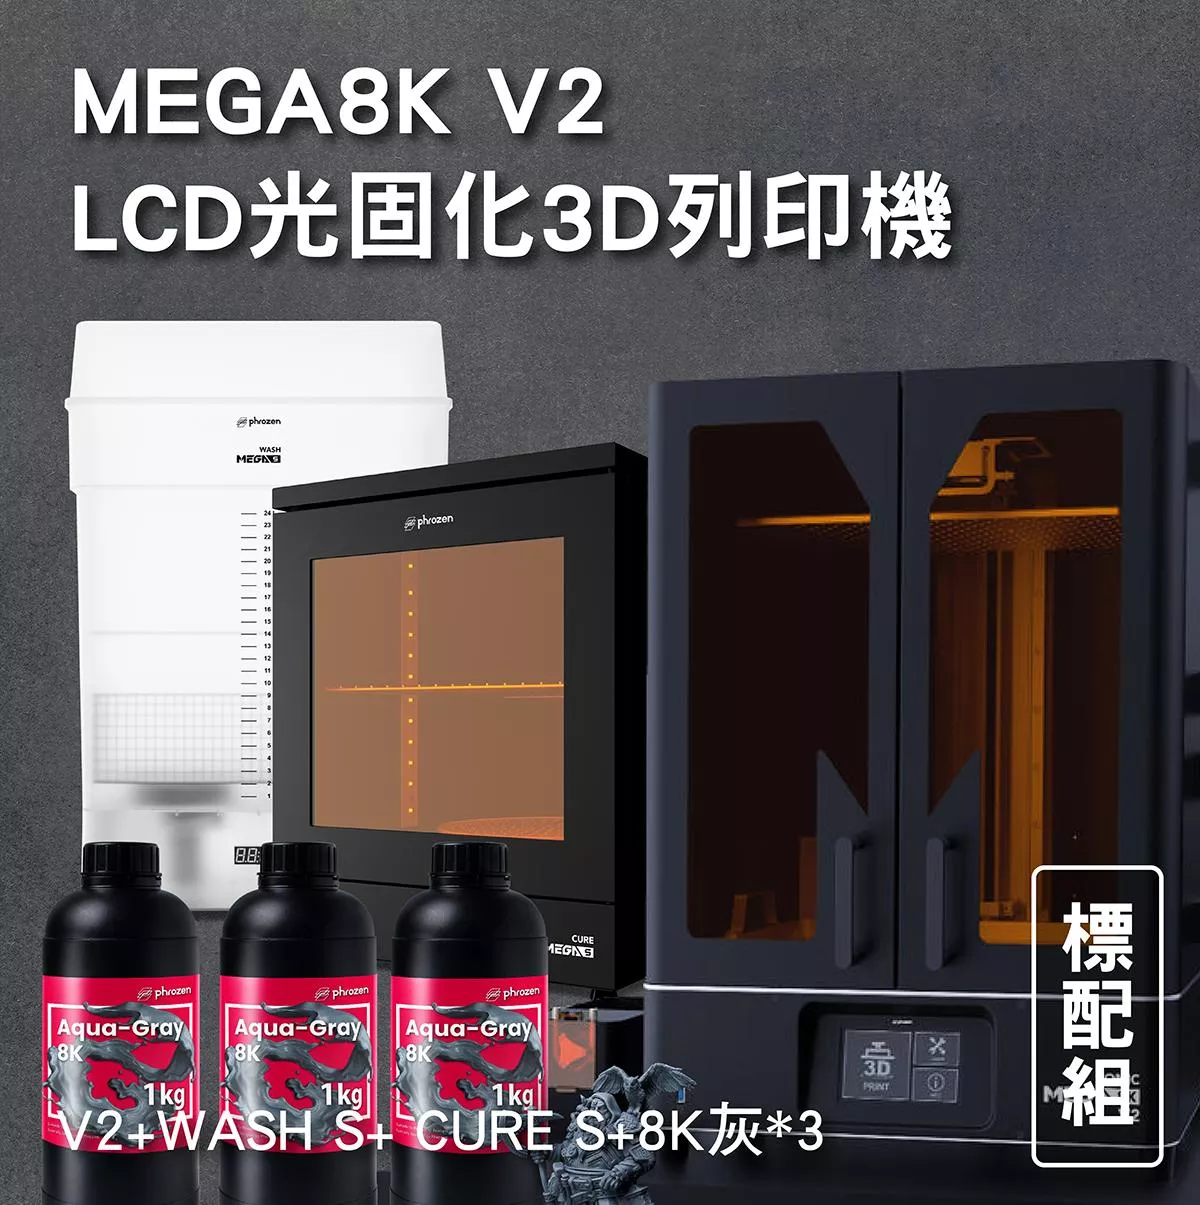 MEGA8K V2 LCD光固化3D列印機 標配組 (V2+WASH S+ CURE S+8K灰*3)